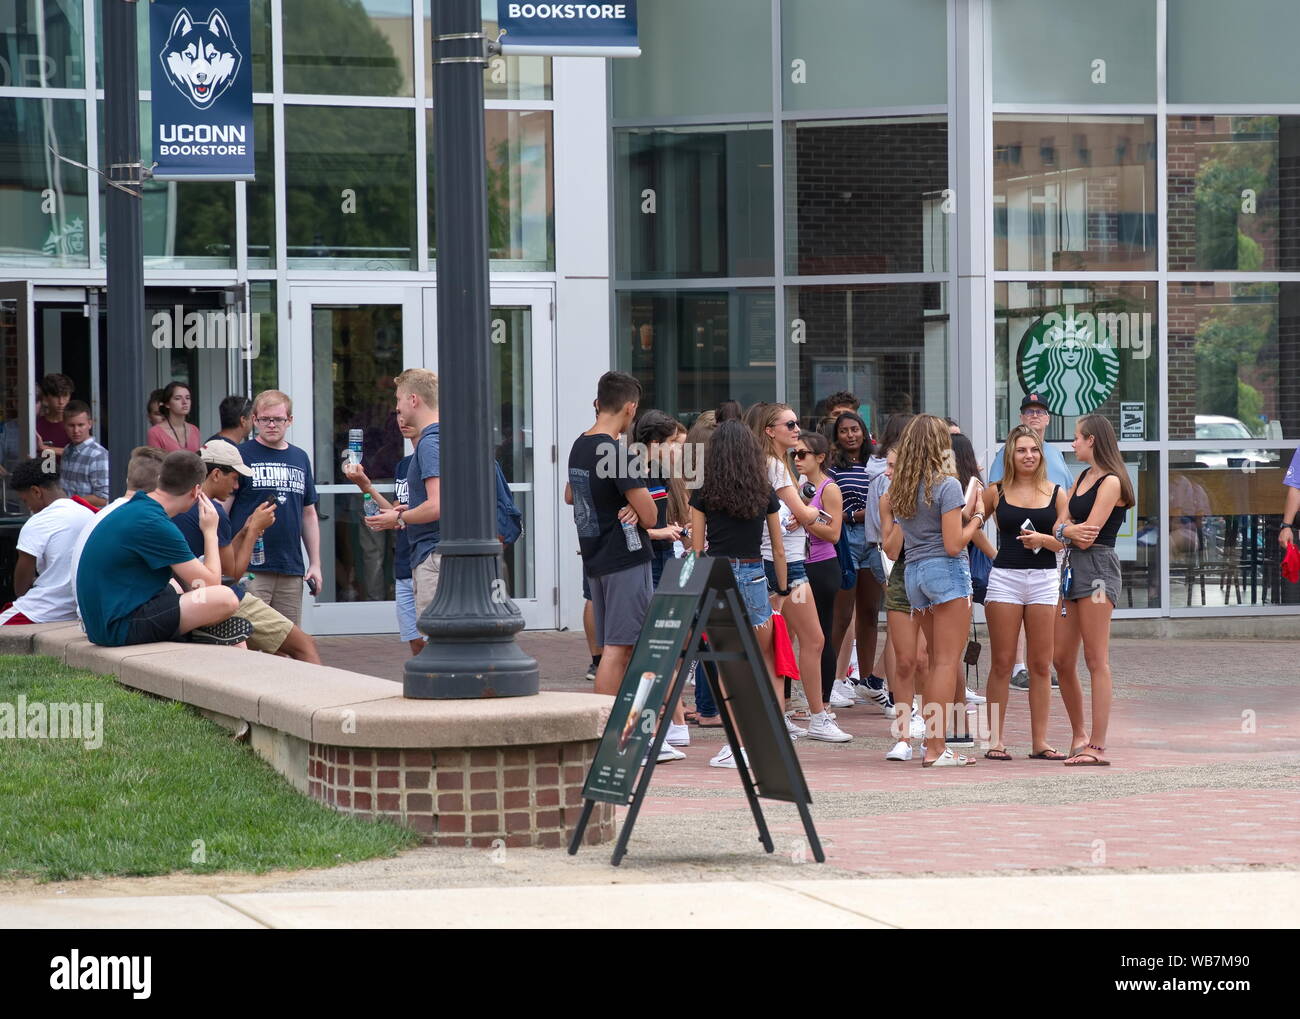 Storrs, CT, USA. Aug 2019. College coeds relajarse y socializar en el campus bookstore antes del inicio de un nuevo año escolar. Foto de stock